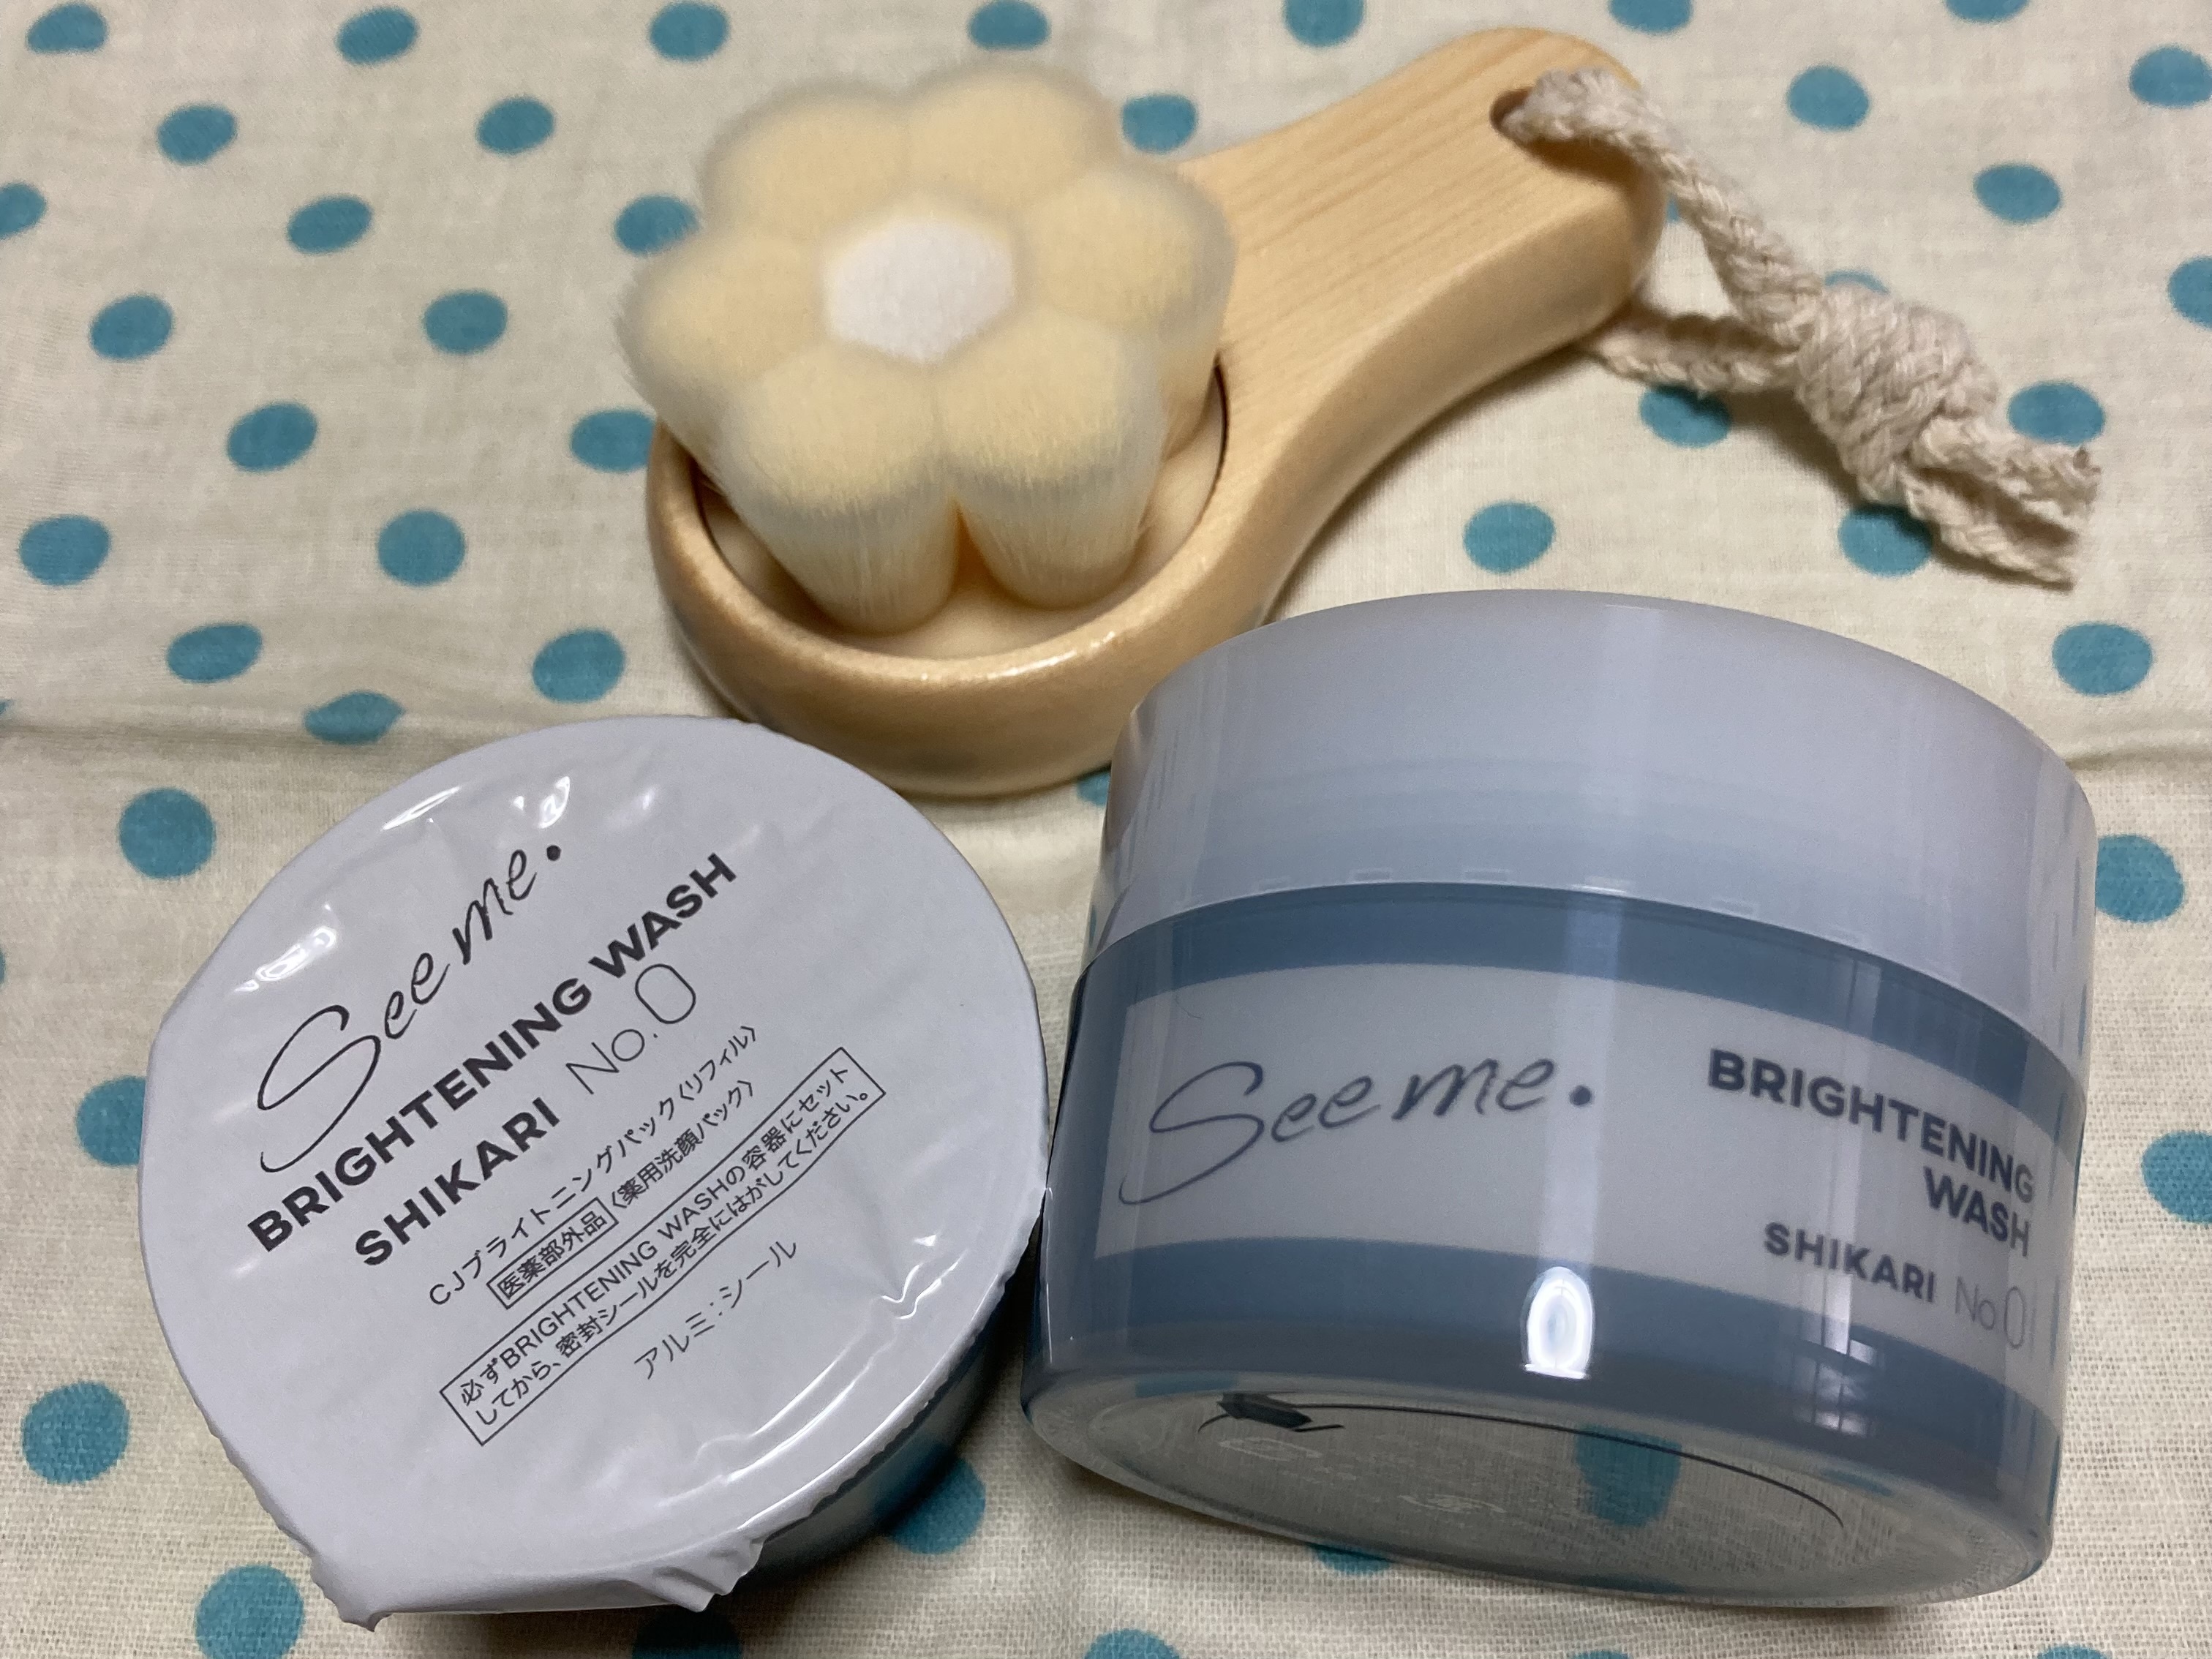 シカリ 洗顔 パック - スキンケア/基礎化粧品